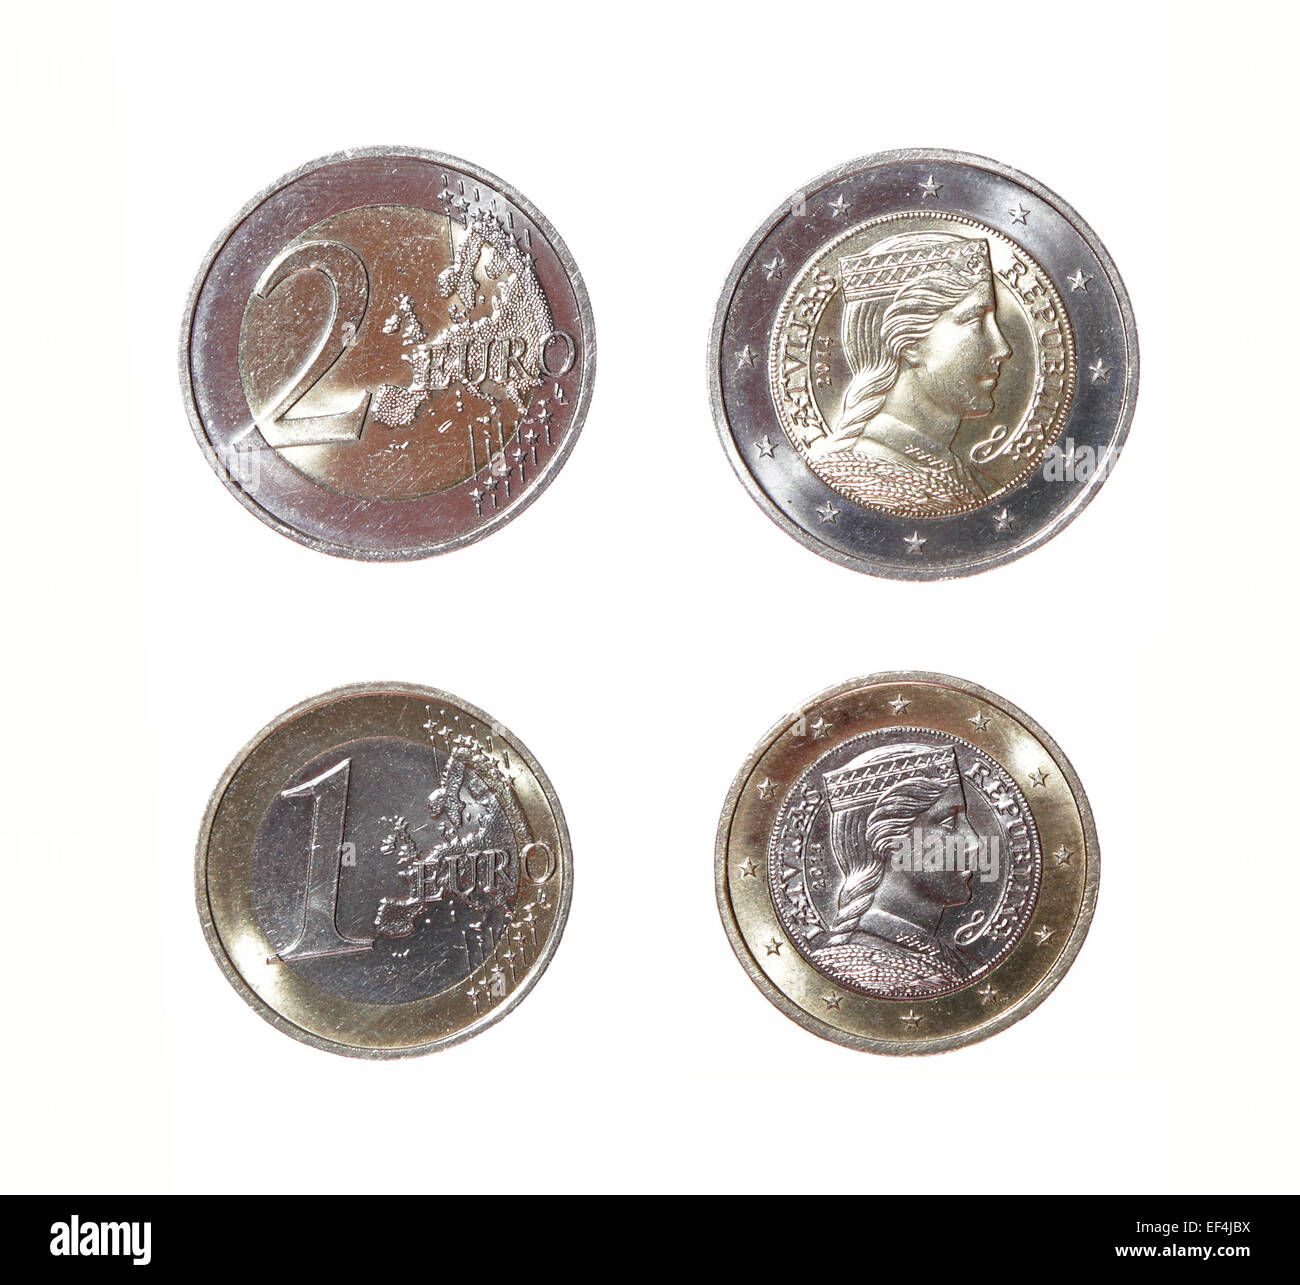 Nouveau deux milda Avers Revers République Lettonie euro coin collection argent monnaie métallique isolée finances monétaire européenne Banque D'Images